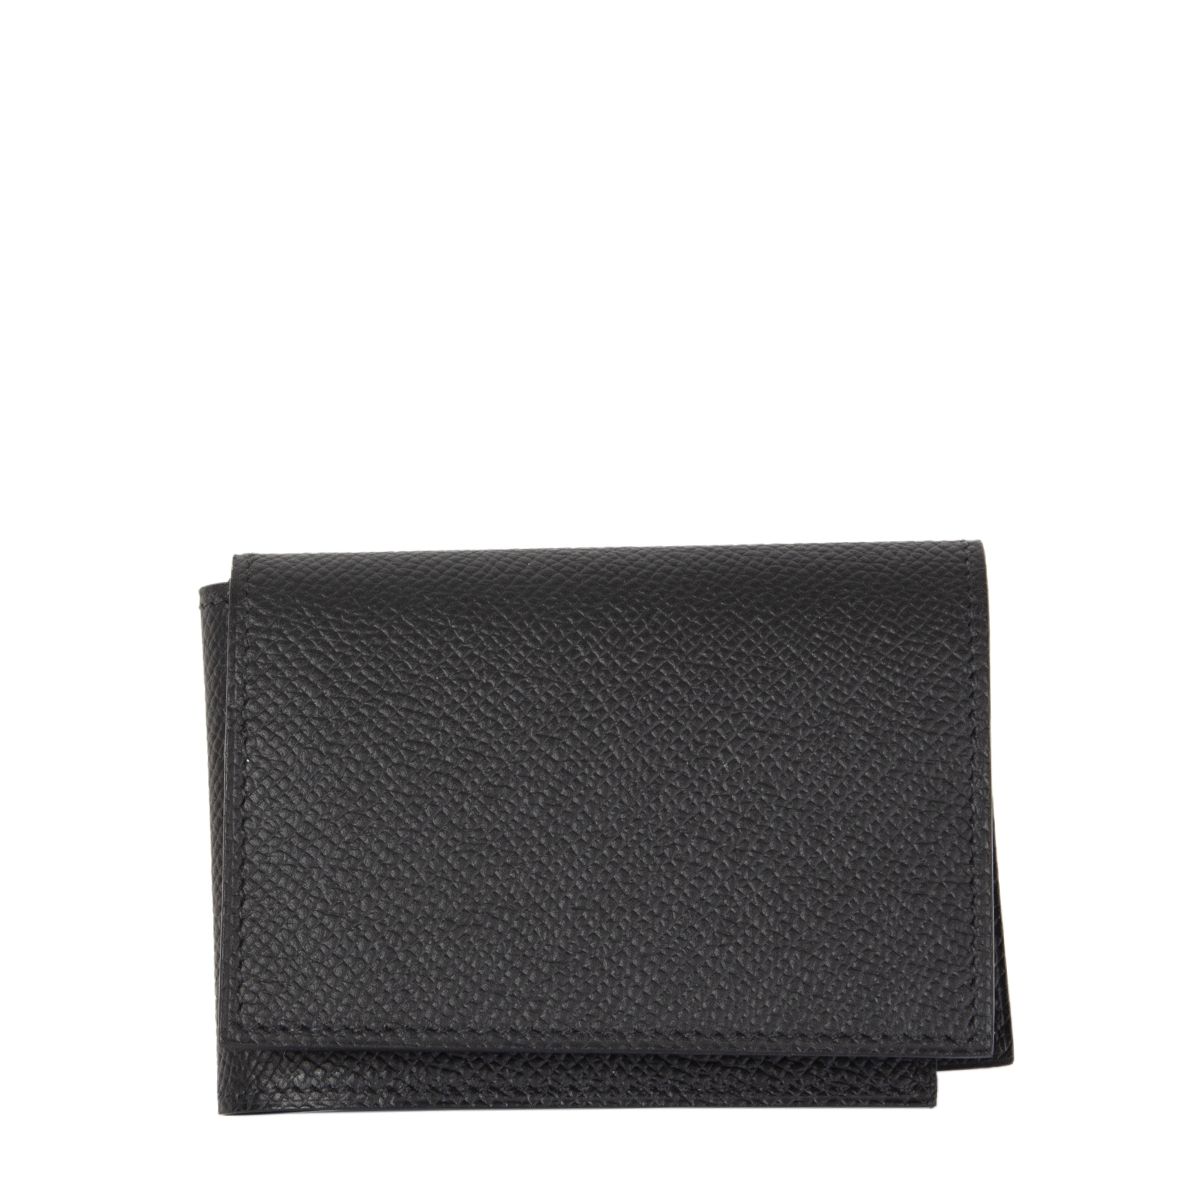 HERMES Leather Card Holder Wallet Black